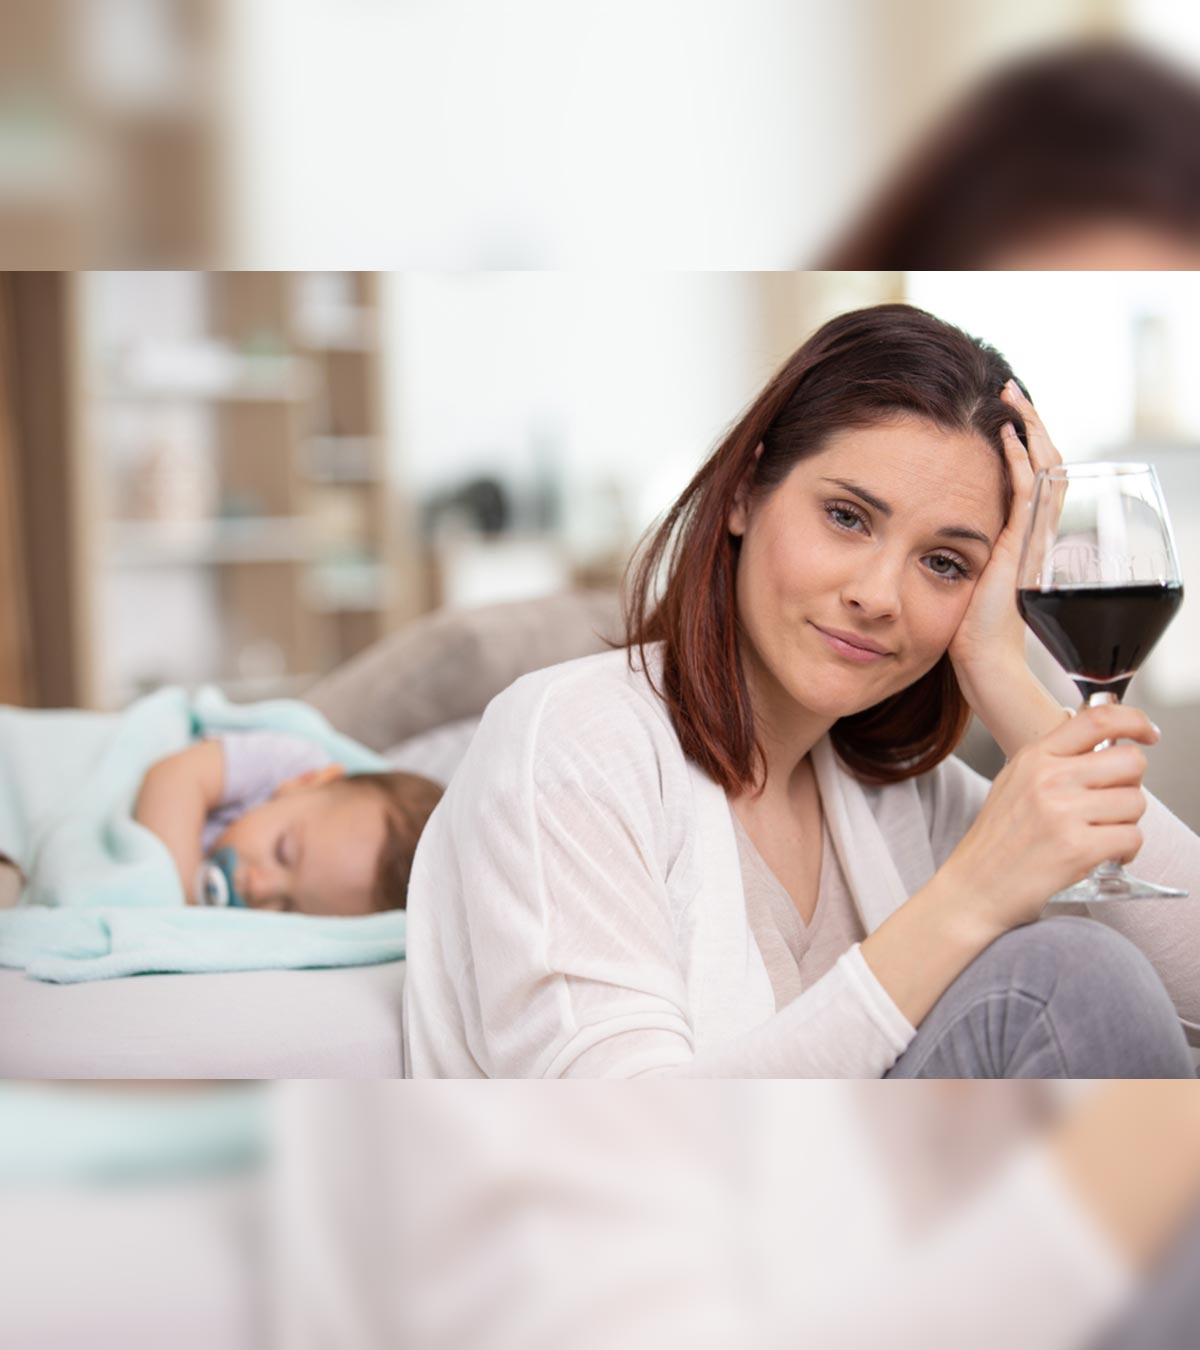 νrsing School: Expert Advice On Alcohol And Breastfeeding